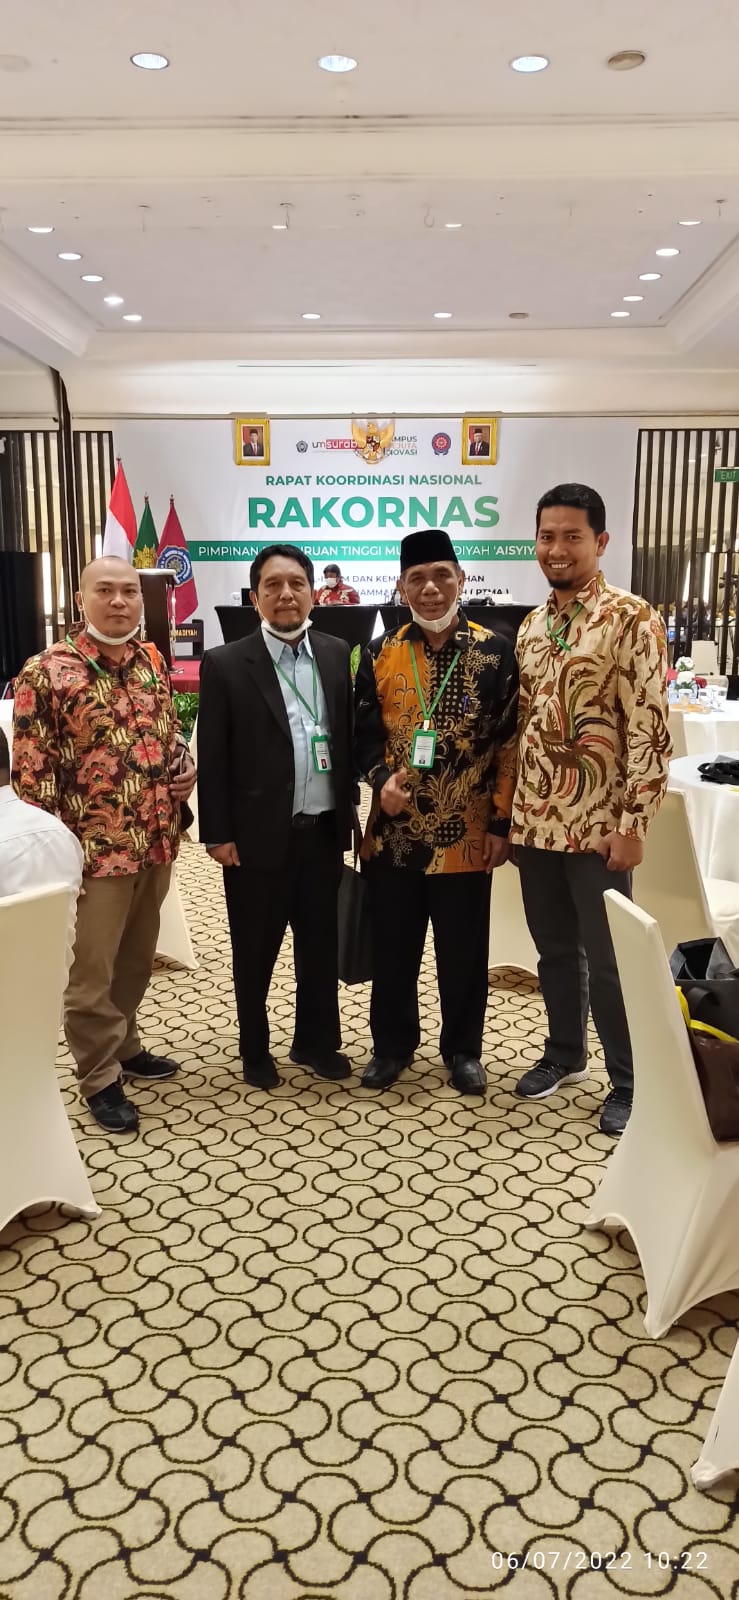 Antisipasi Covid-19, Ini Poin-poin SE Gubernur Tentang Libur dan Cuti Bersama di Riau